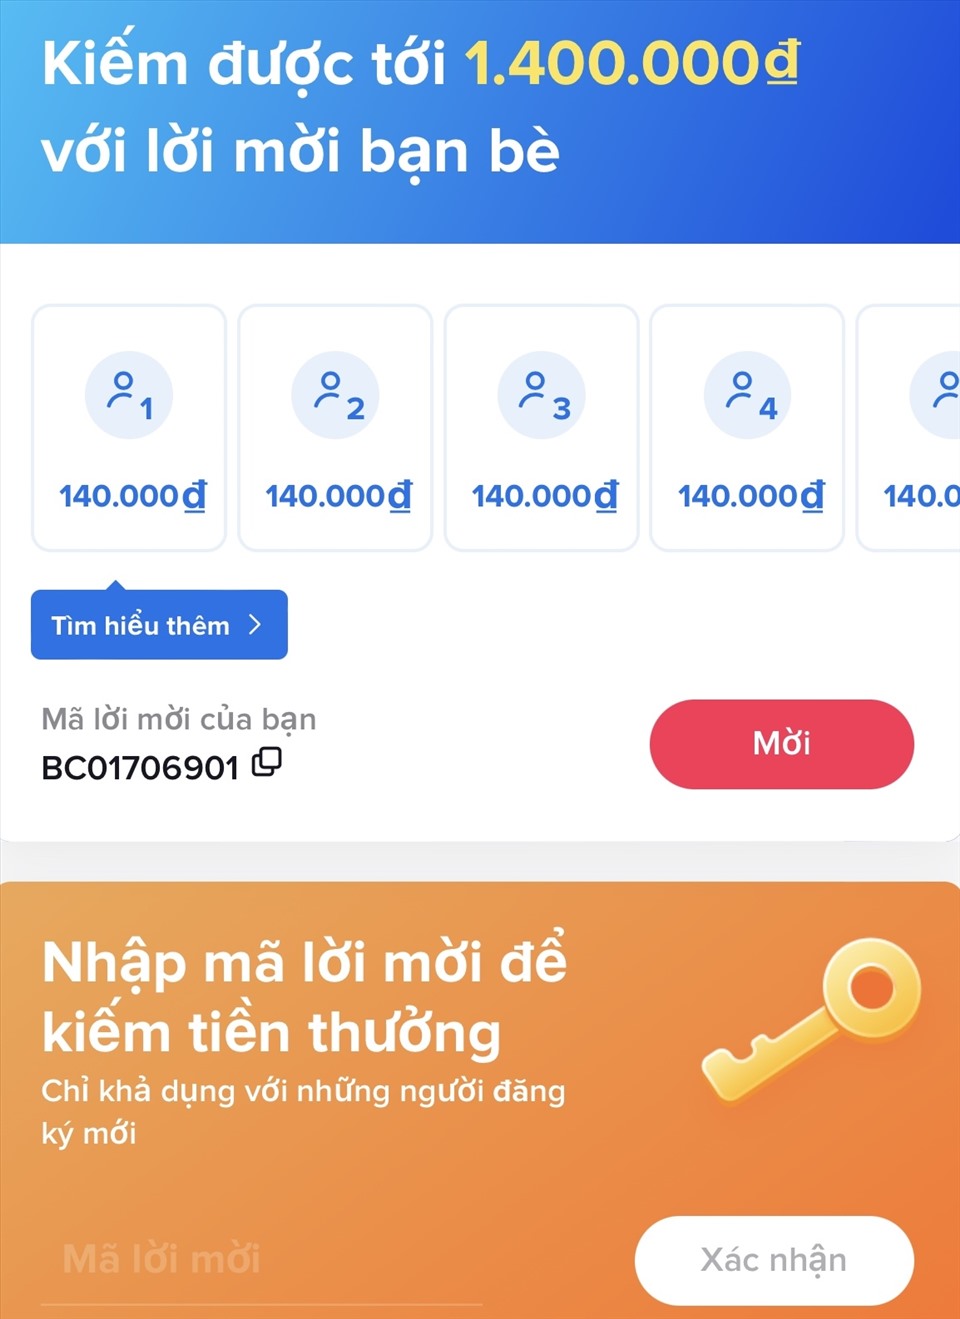 Tiktoker Việt Nam nay đã có thêm một chương trình kiếm tiền mới trên nền tảng. Ảnh chụp màn hình